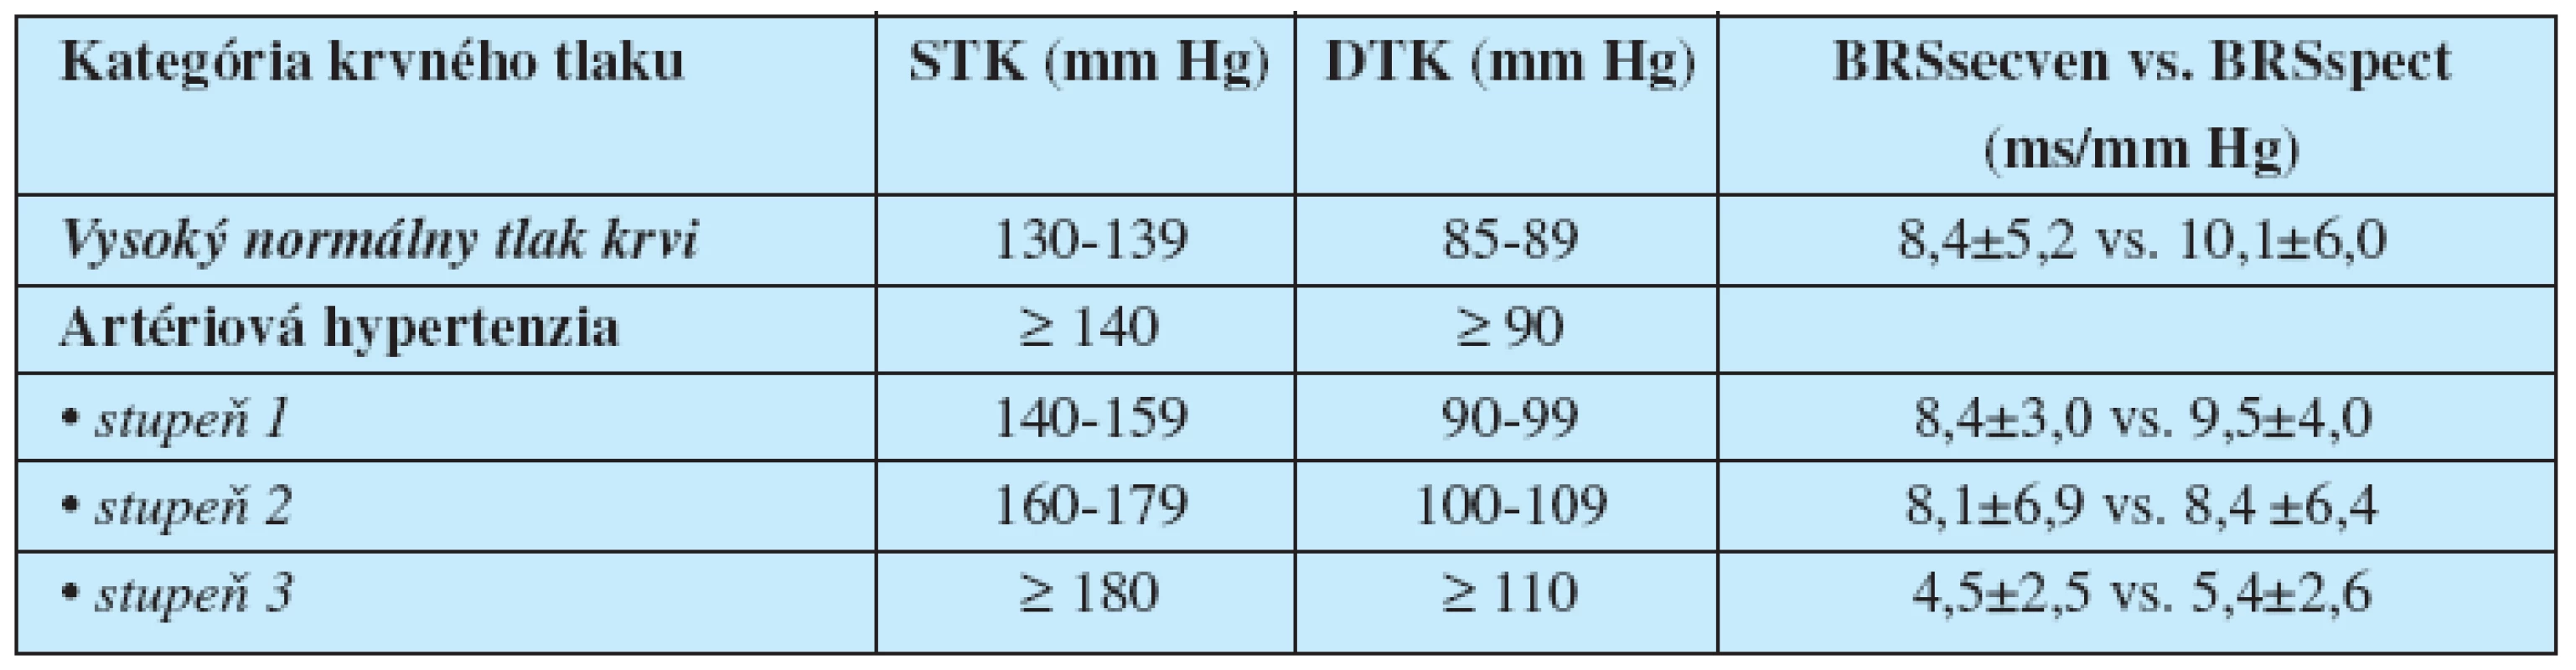 Hodnoty baroreflexnej senzitivity vyšetrenej sekvenčnou a spektrálnou metódou podľa kategórie krvného tlaku